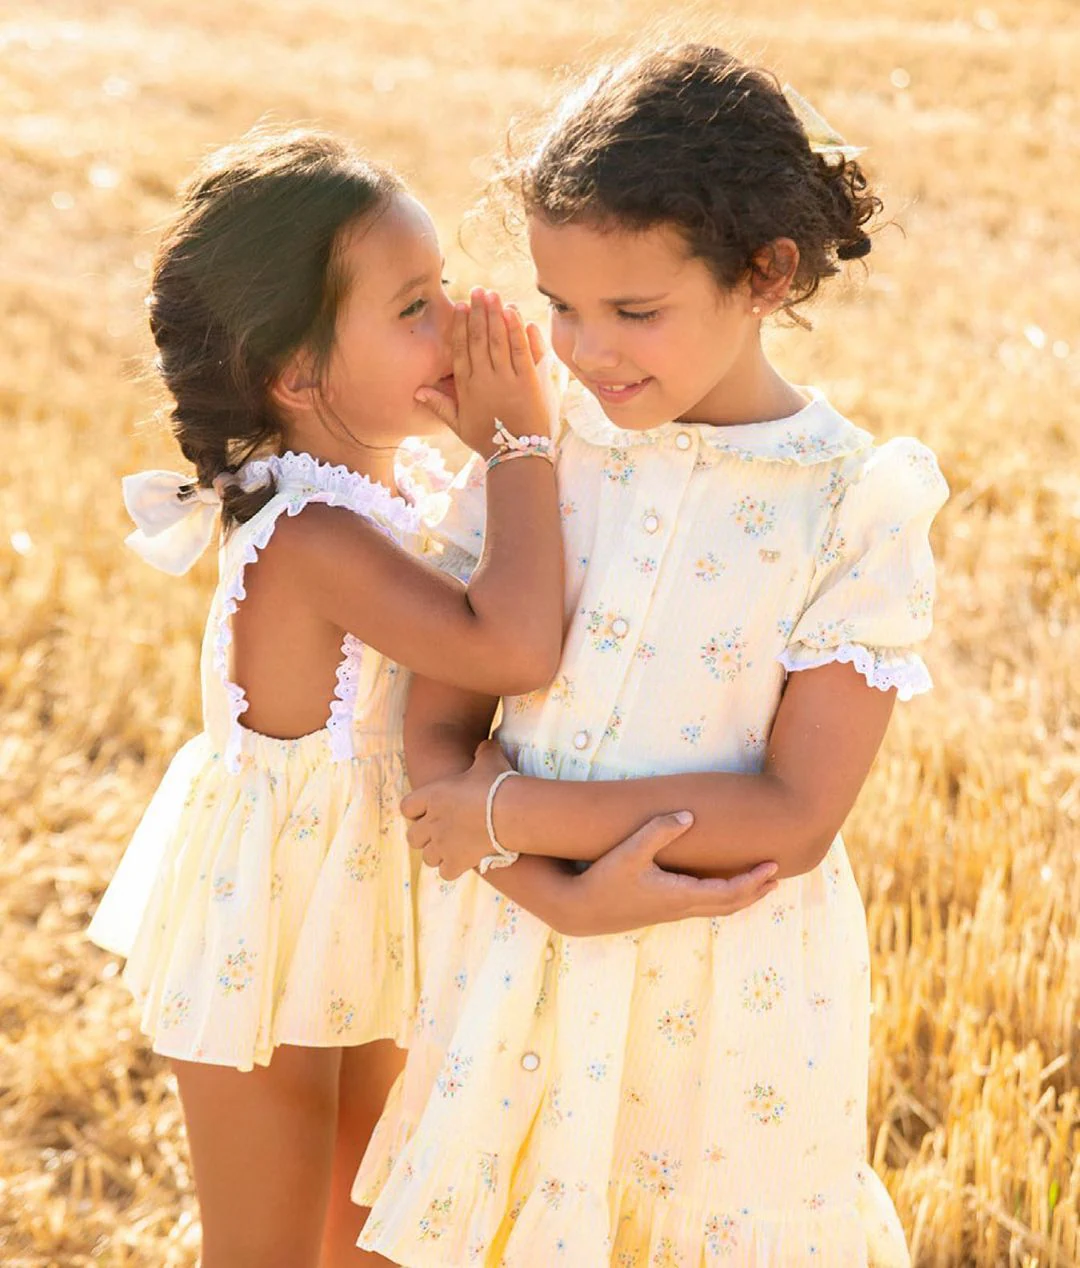 Fotos: Diez pequeñas de moda infantil que conocer para vestir coordinados a tus hijos | Diario